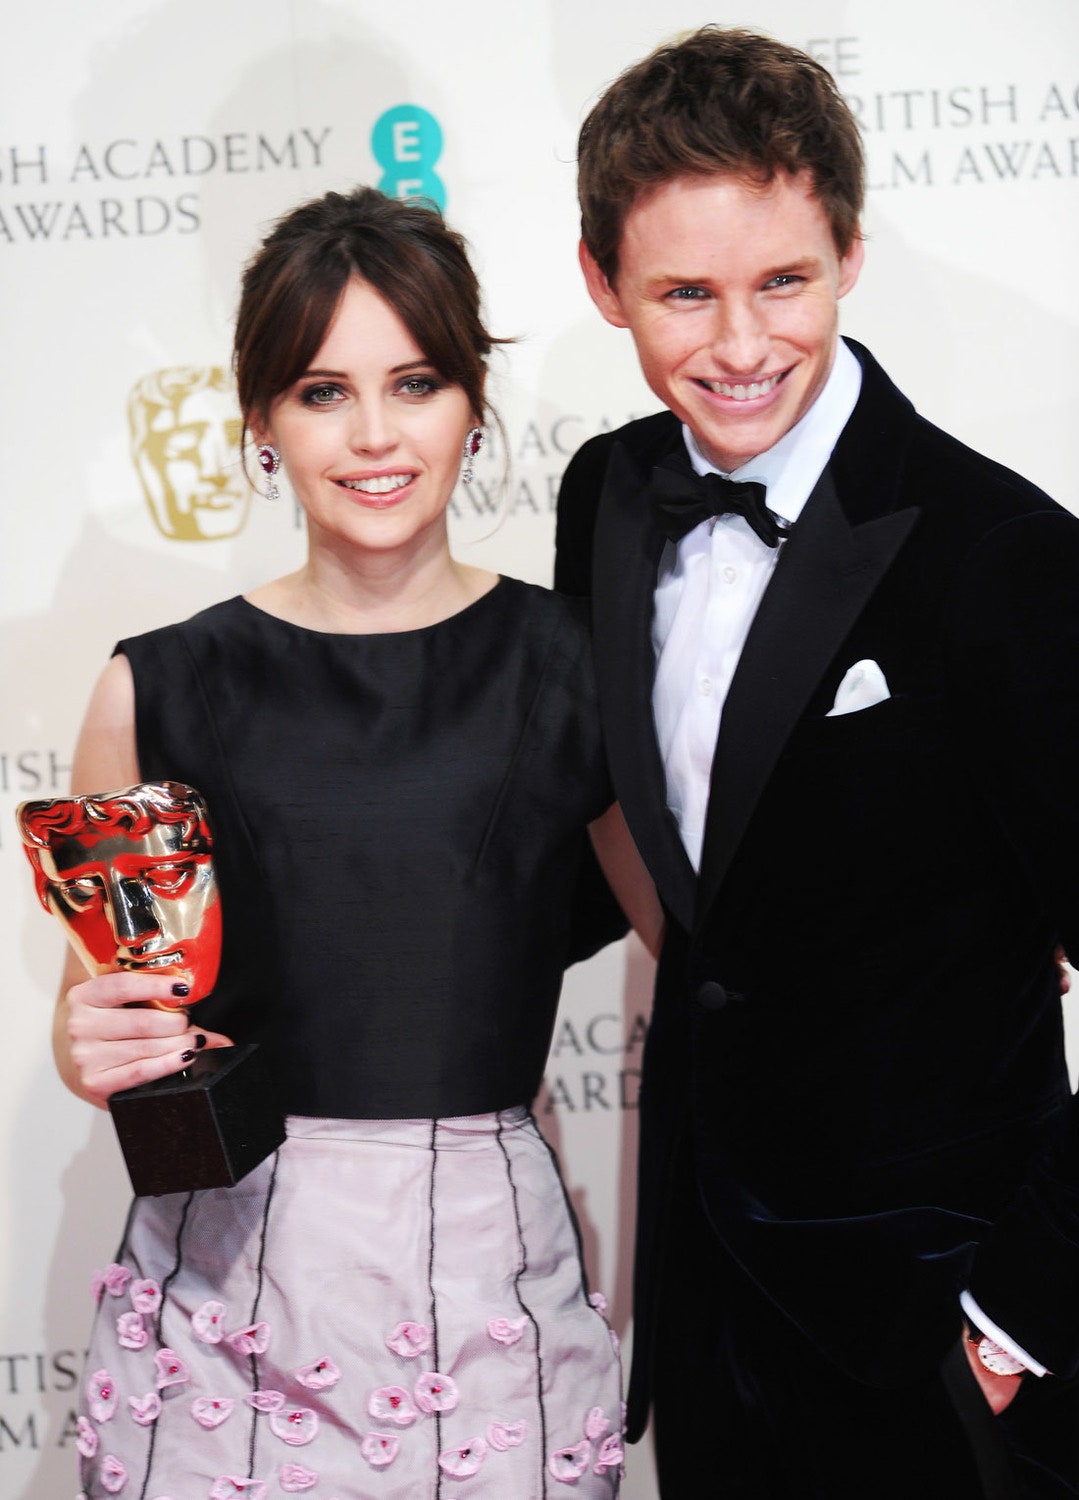 BAFTA 2015 итоги и главные моменты церемонии вручения кинонаград